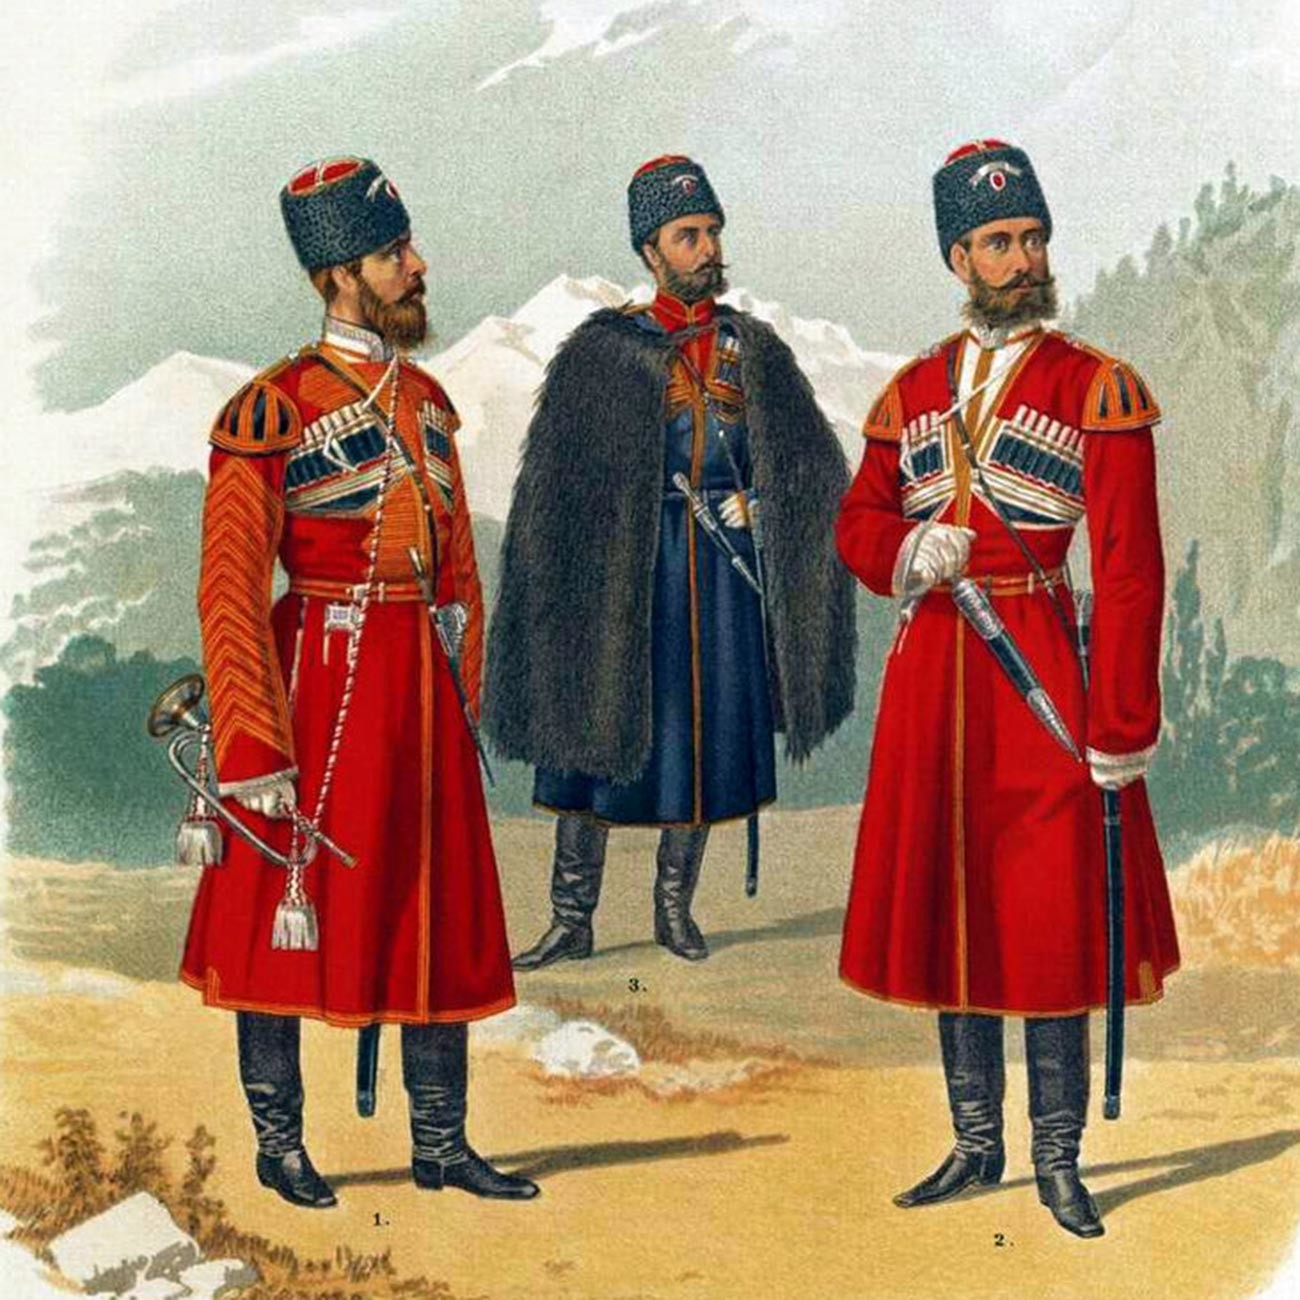 Uniformi dei cosacchi della Scorta personale di Sua Maestà
